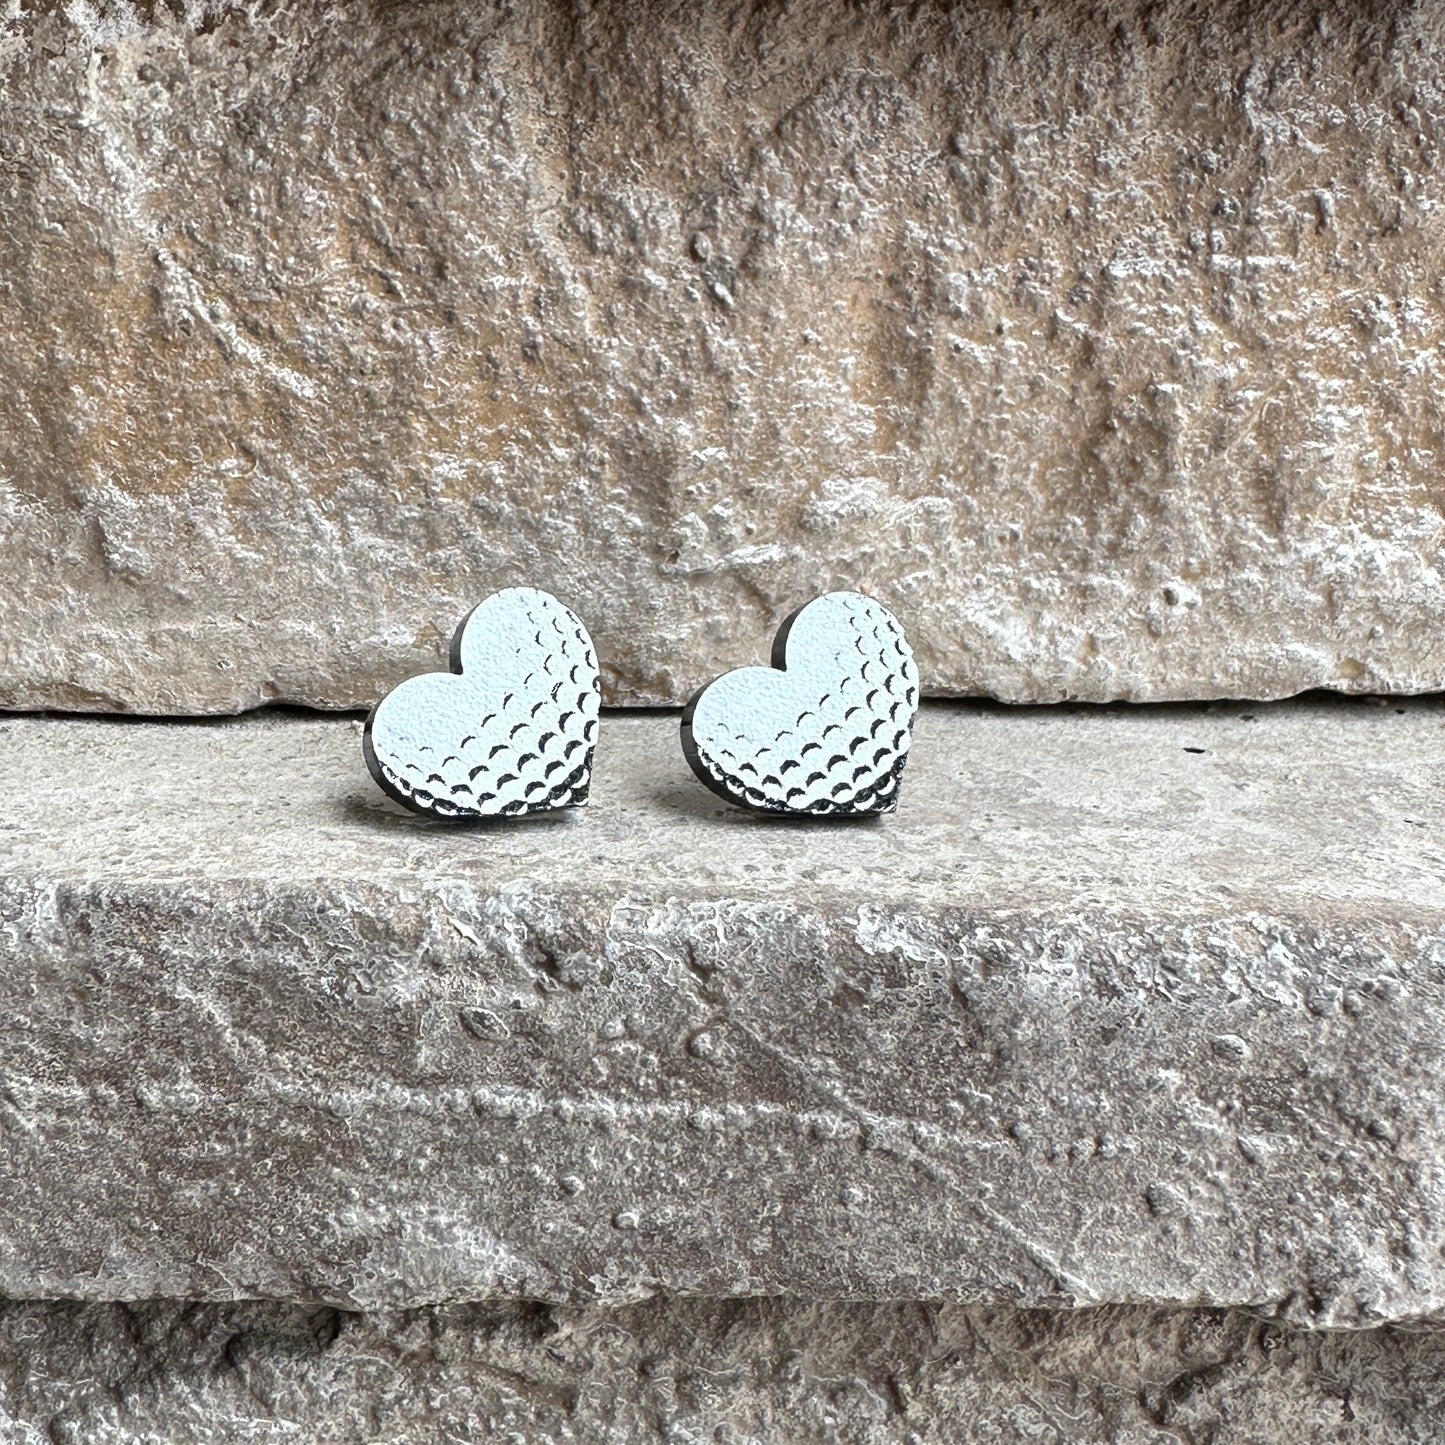 Golf Two Tone Heart Stud Earrings | Sports Earrings